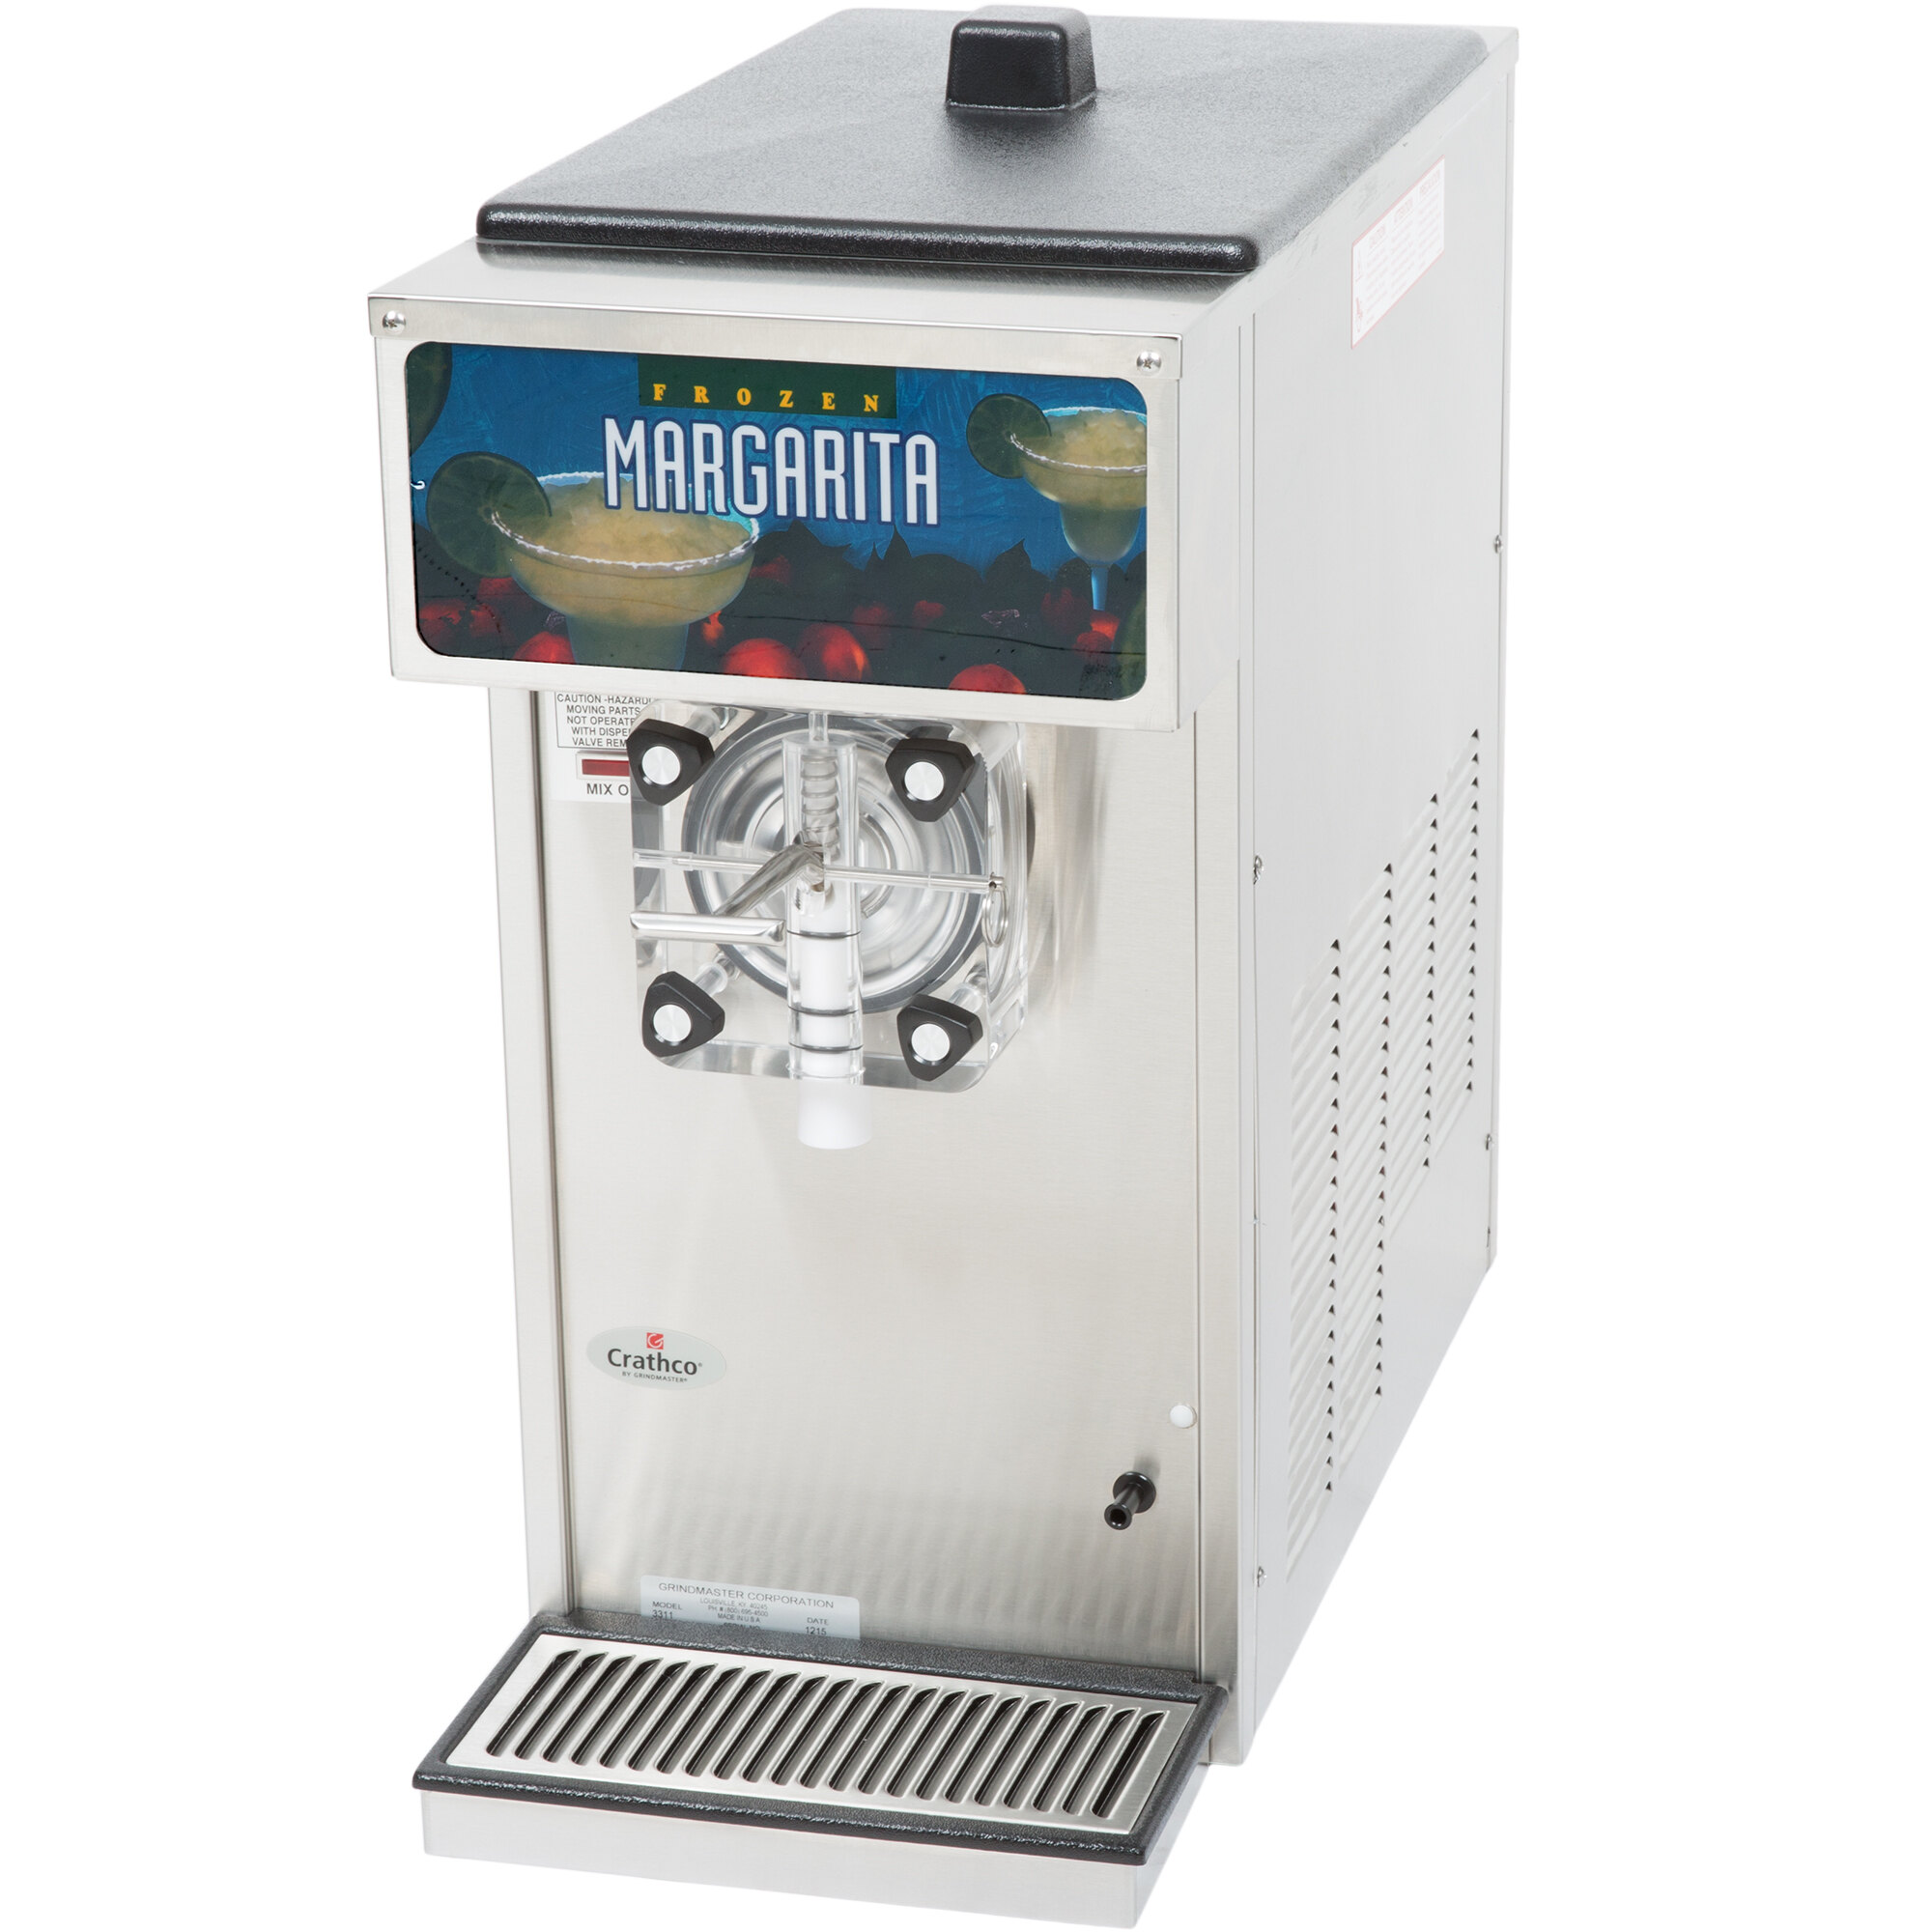 crathco margarita machine